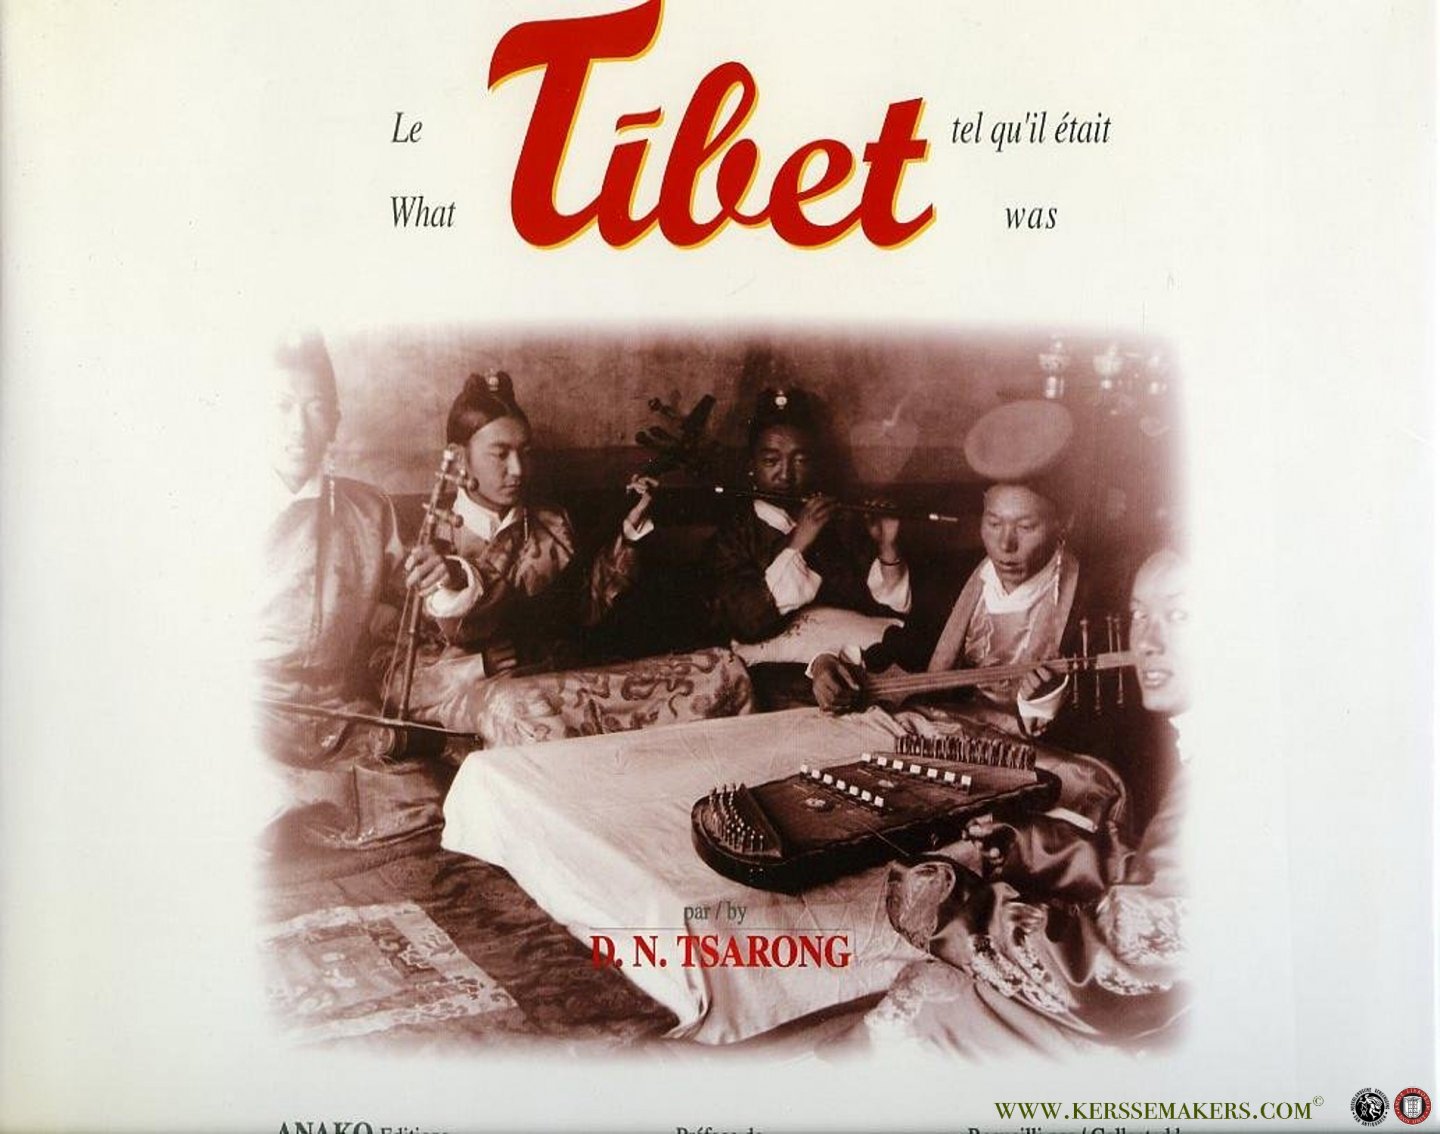 CLAUDON, Jean-Paul (collected by) - What Tibet was - Le Tibet tel qu'il était